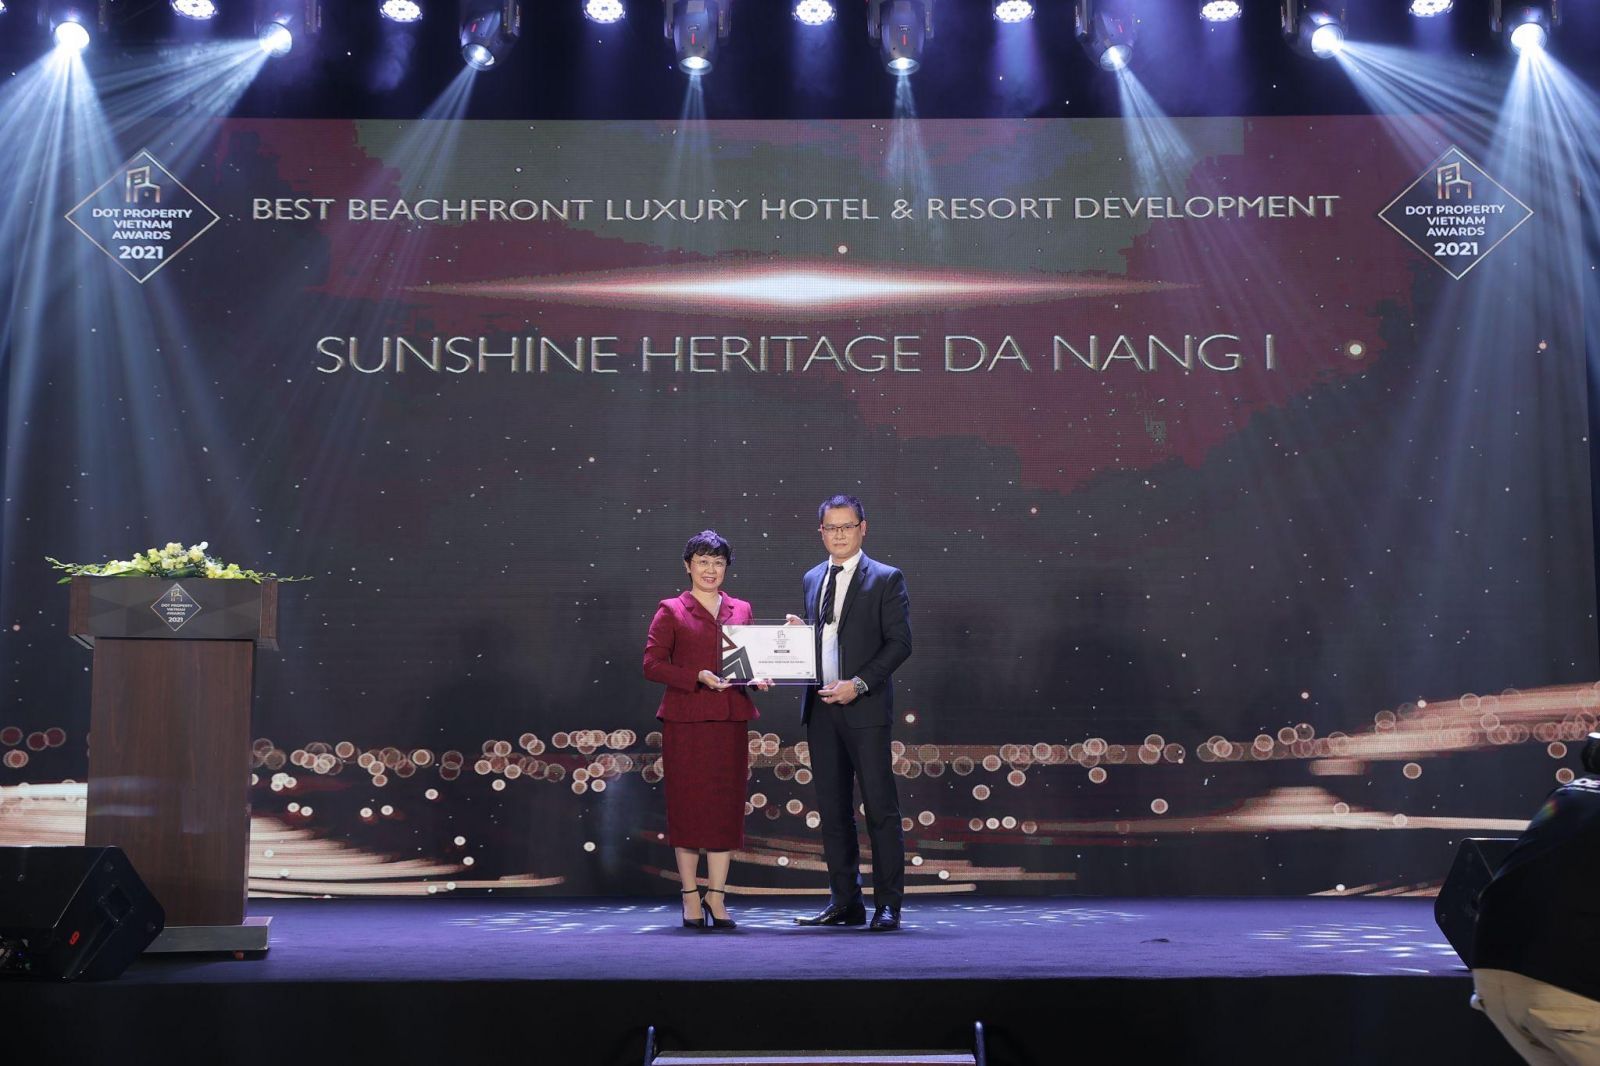 Giải thưởng “Dự án khách sạn và nghỉ dưỡng cao cấp hướng biển tốt nhất Việt Nam 2021 - Best Beachfront Luxury Hotel & Resort Development Vietnam 2021” đã được trao cho Dự án Sunshine Heritage Đà Nẵng I .